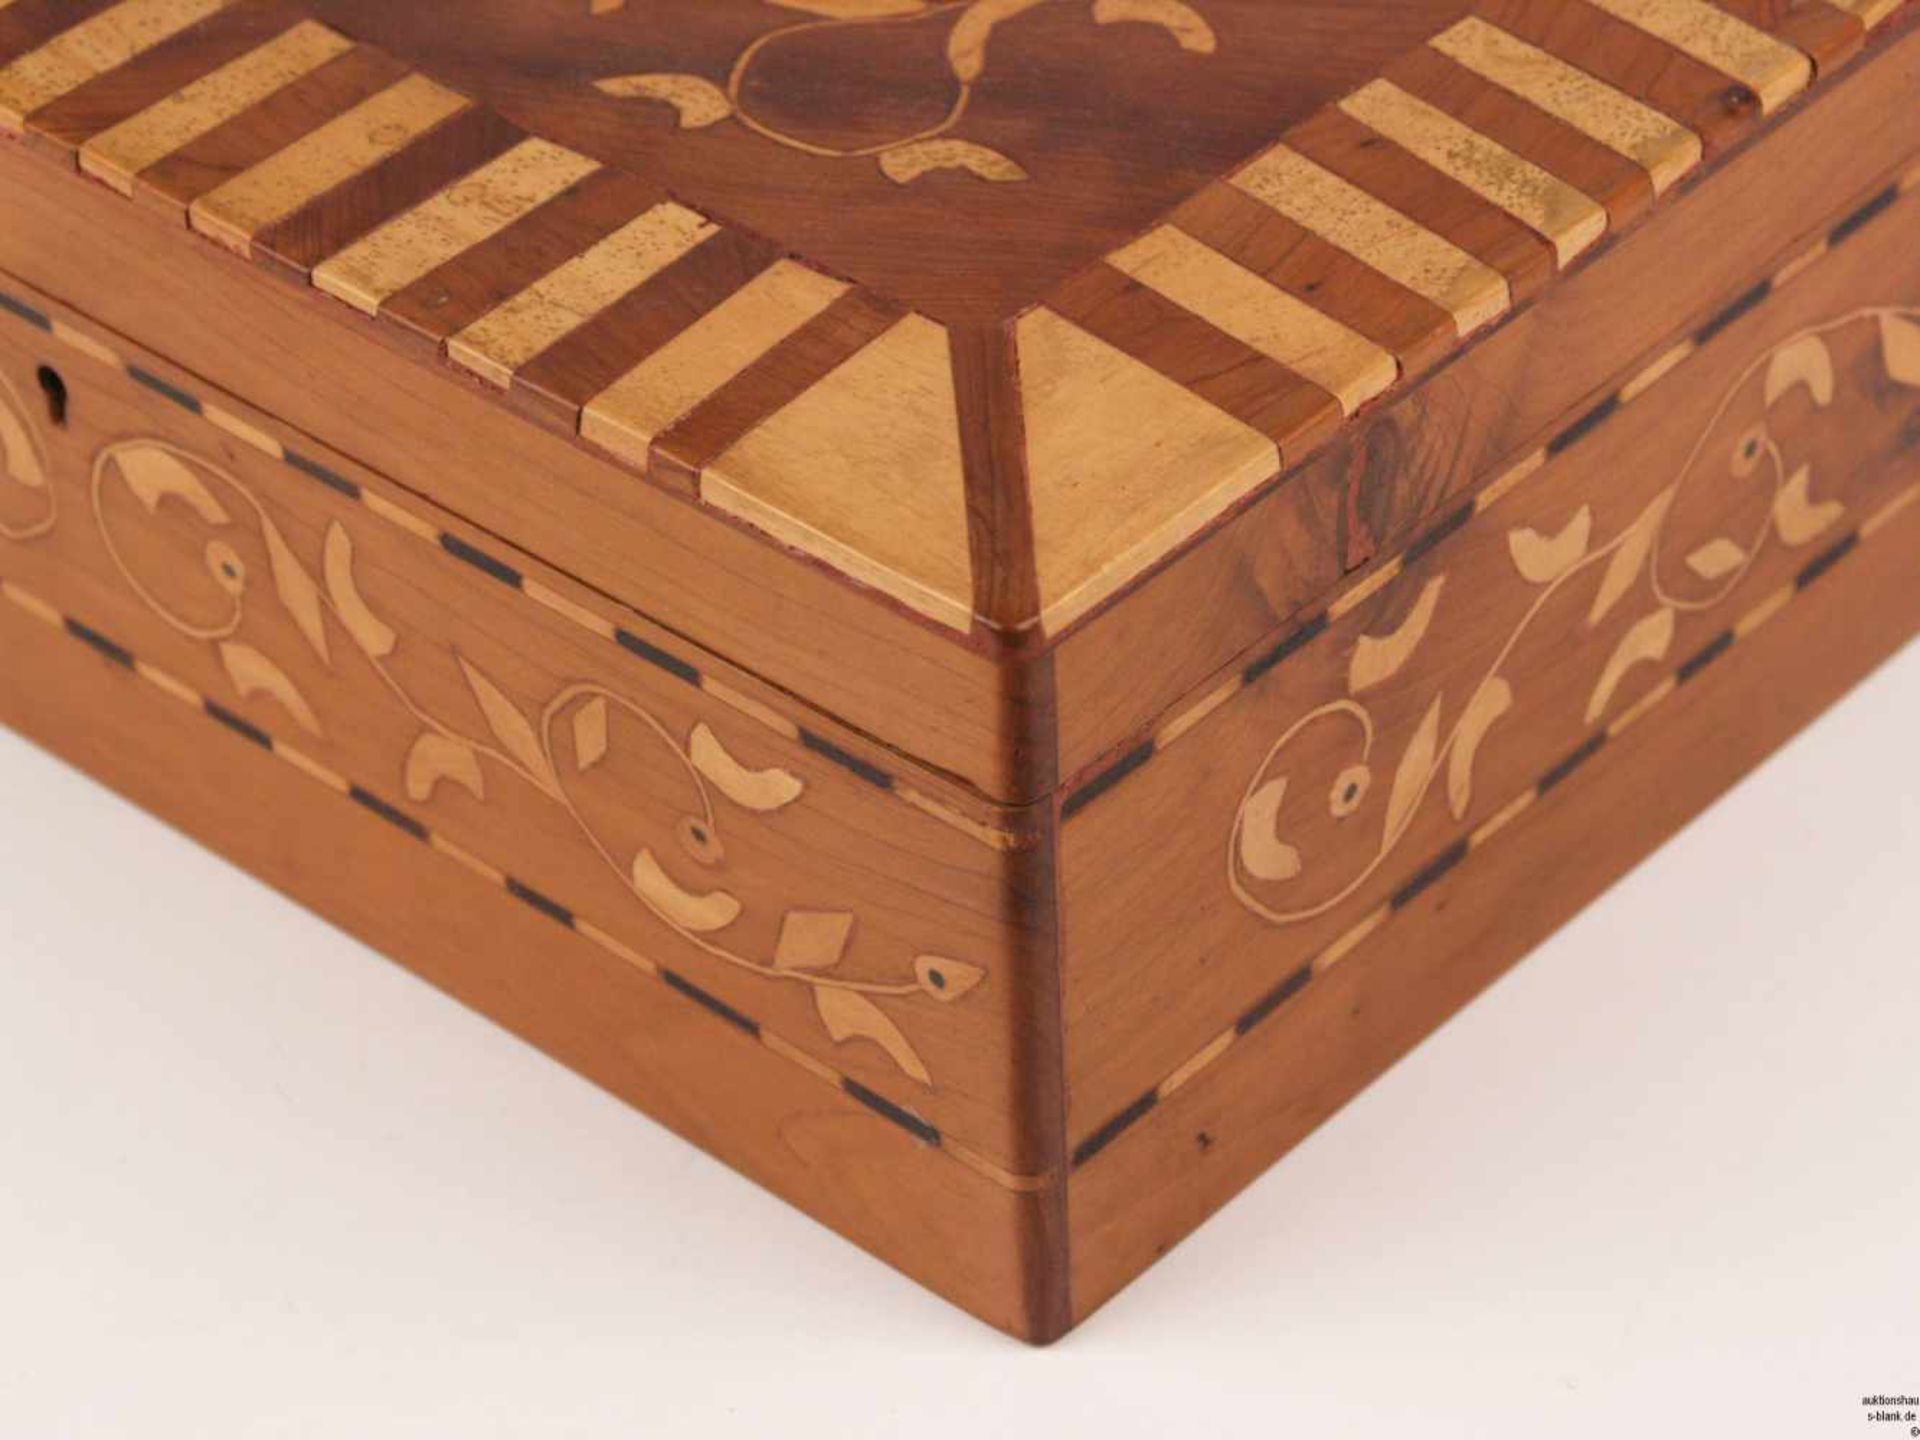 Nähkasten - rechteckige Form, Holz, Perlmutt- und Holzintarsien, geometrisches und florales - Bild 4 aus 8